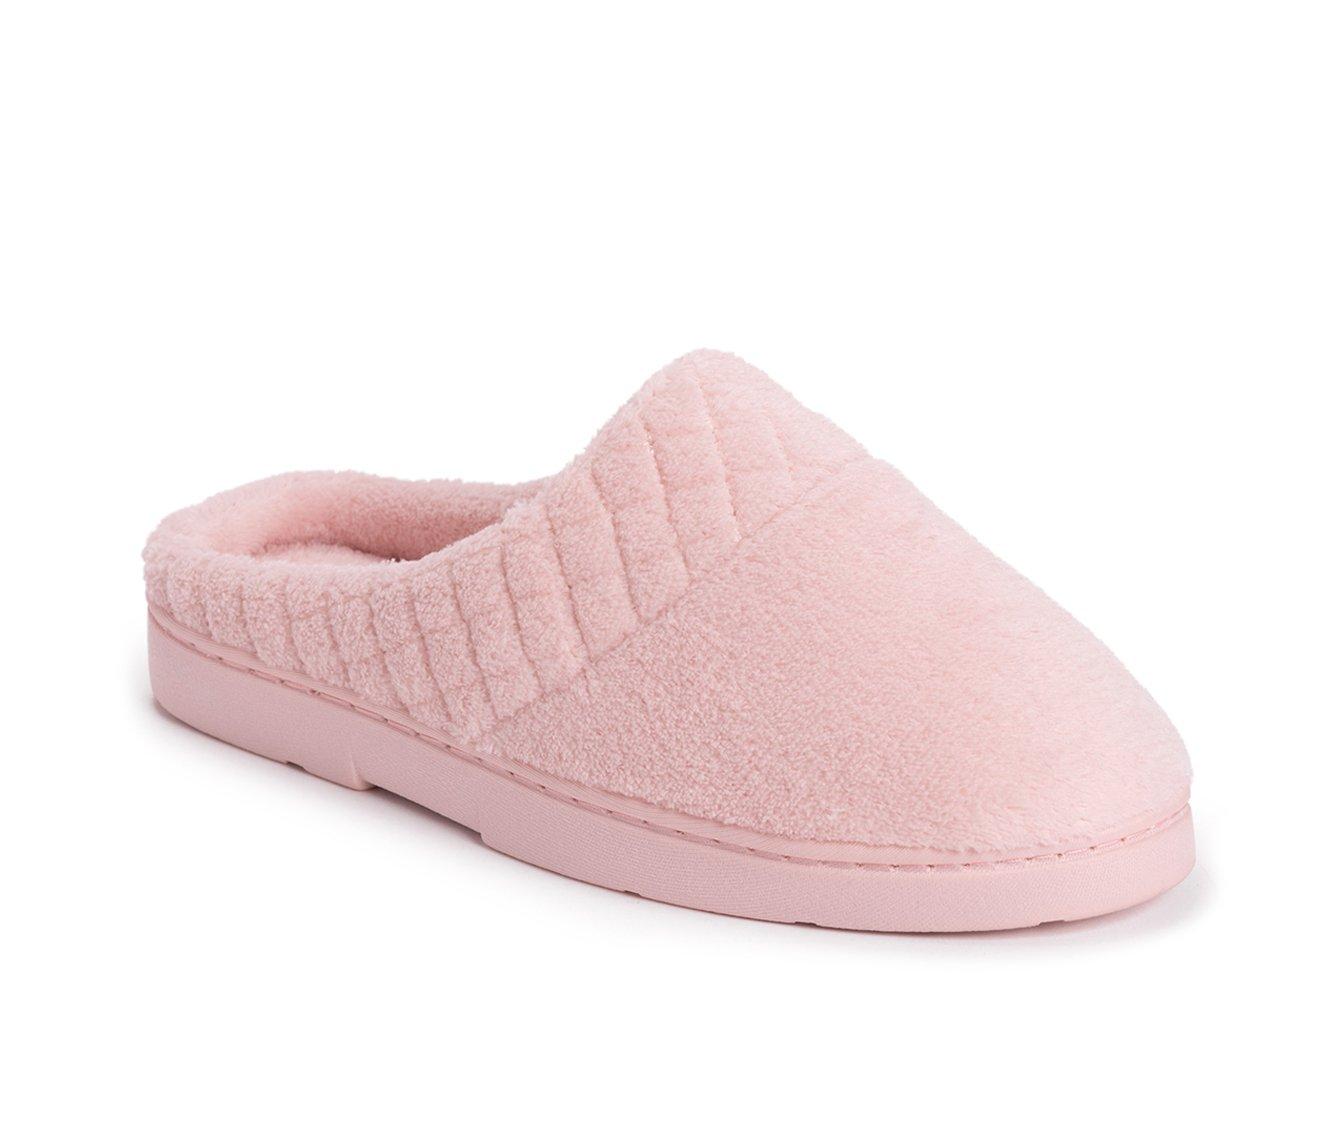 MUK LUKS Women's Micro Chenille Clog Slippers